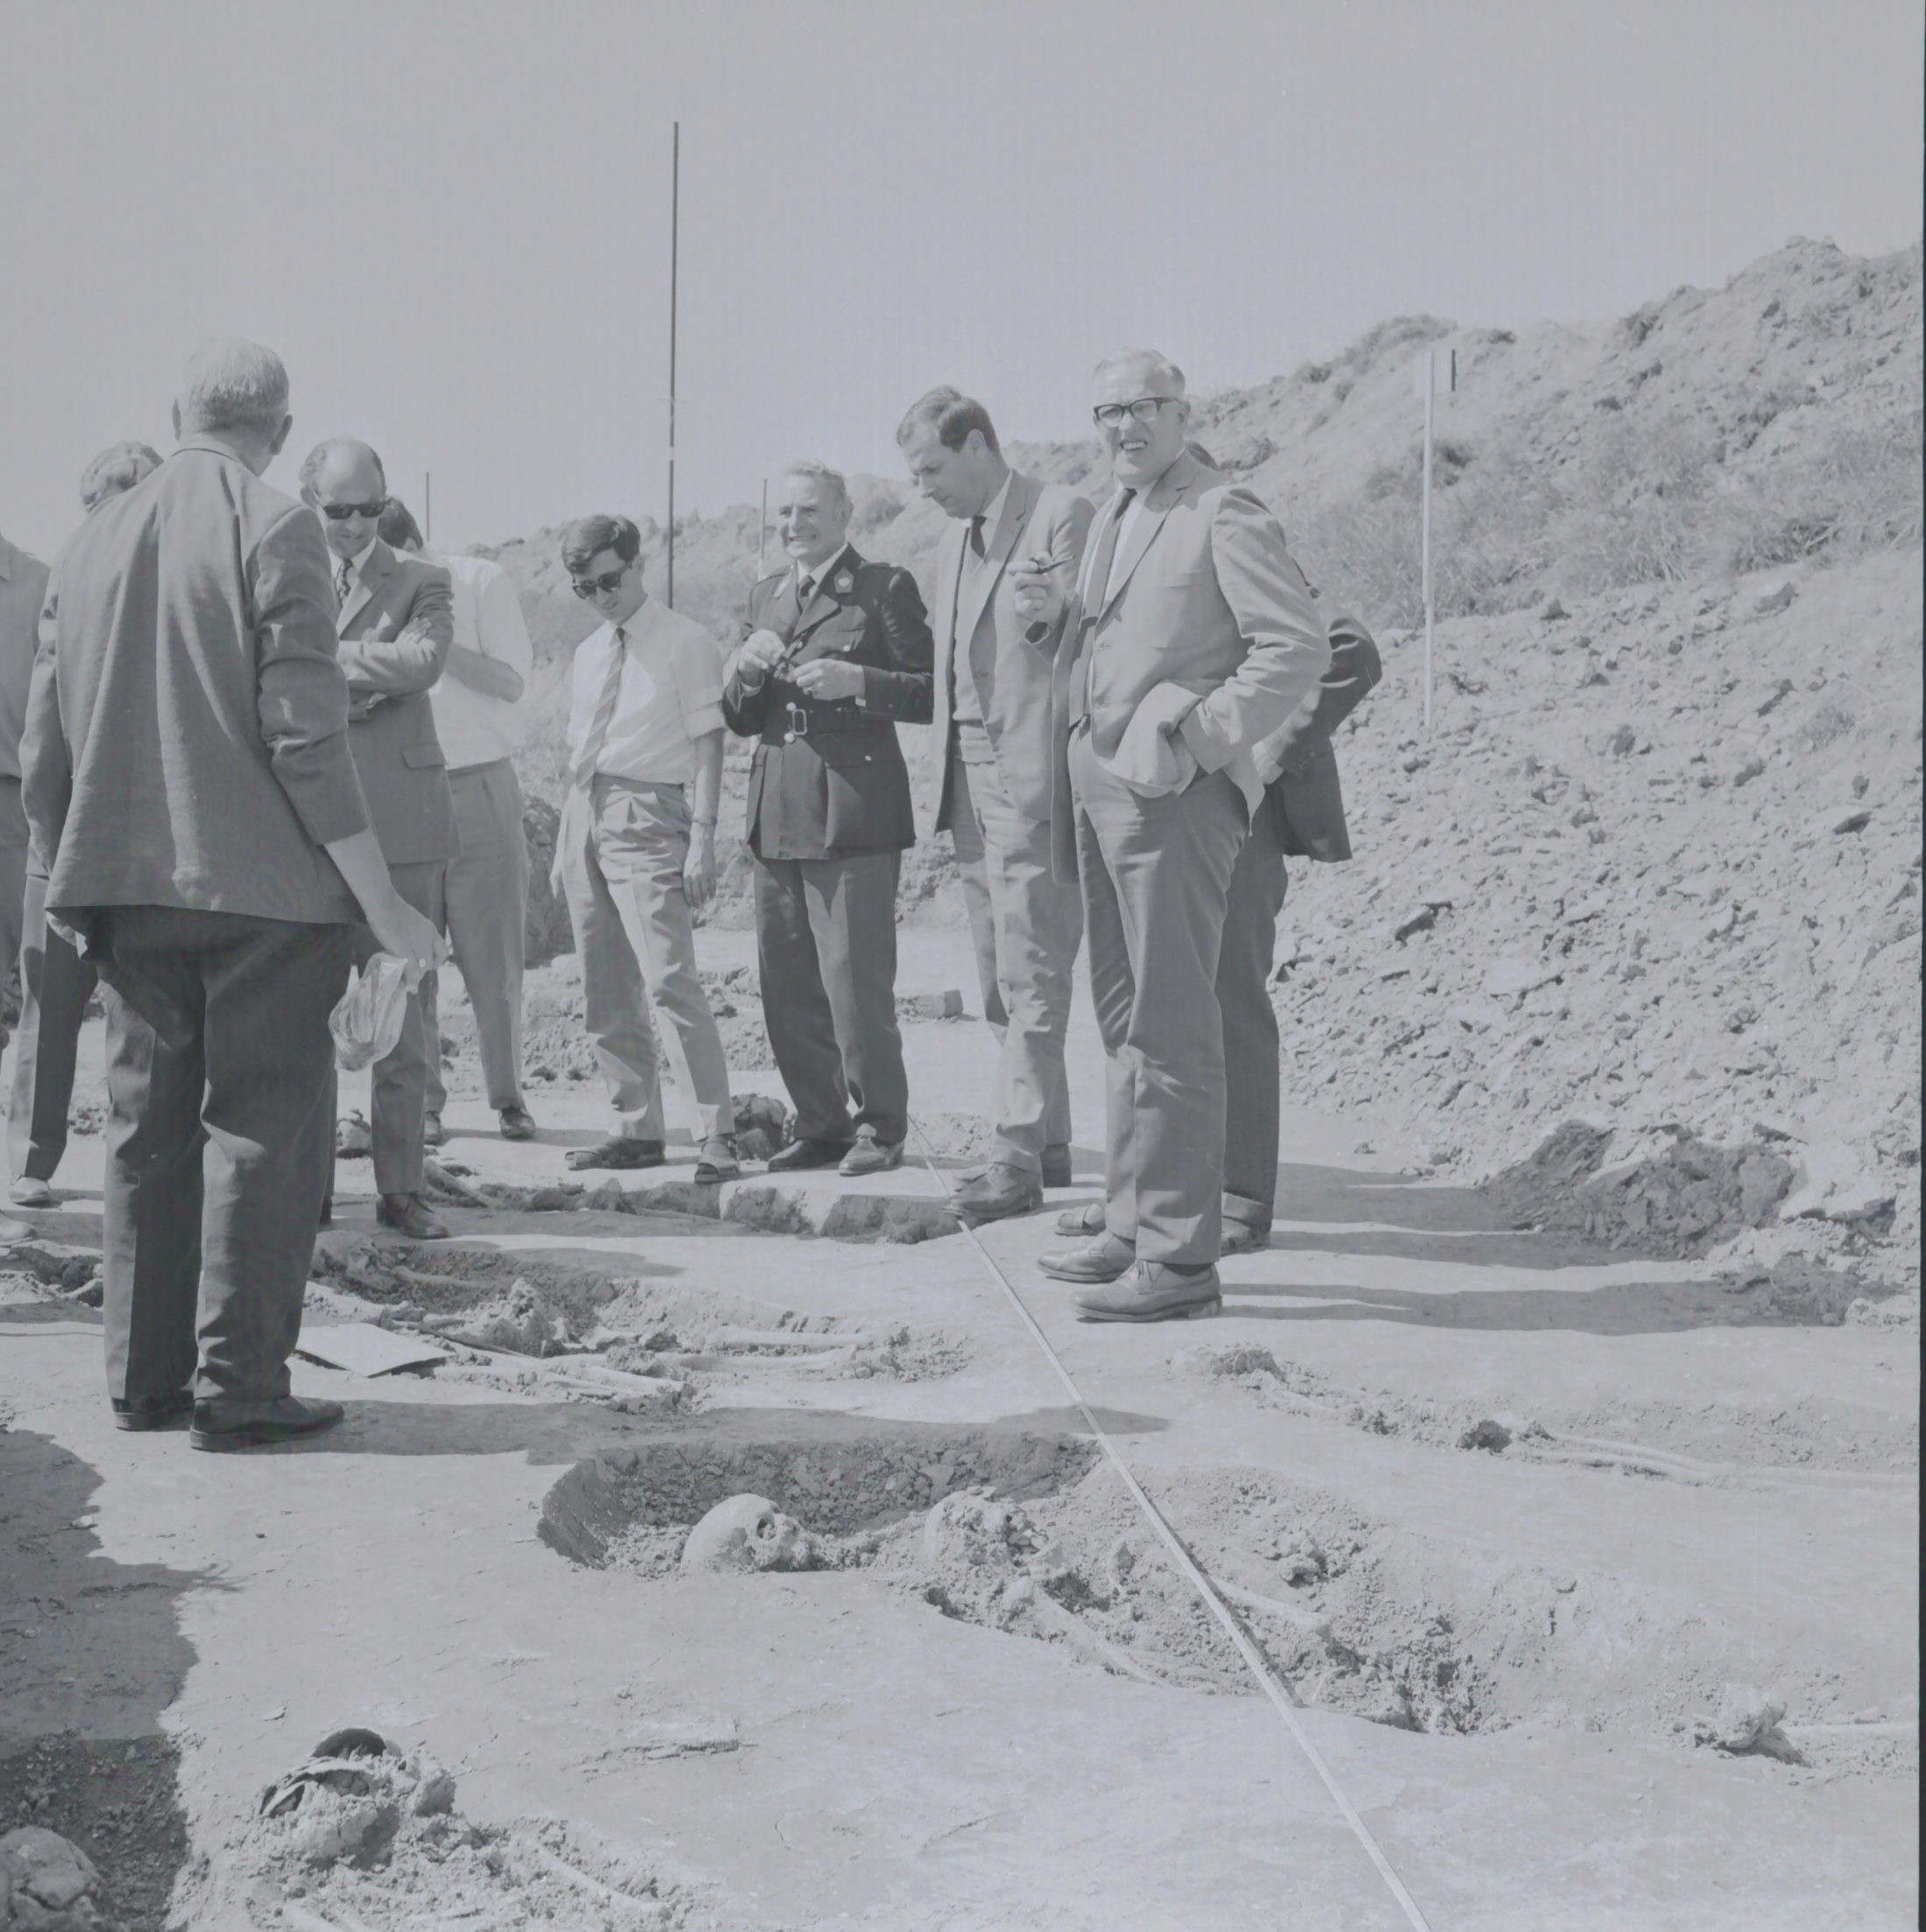 Bij het onderzoek in 1969 voert de B.A.I. de werkzaamheden uit. Slechts één graf is omsloten dor een bakstenen muurtje. De Rijkspolitie volgt het een en ander. Foto: 1969, van een negatief, RHC GA, Groninger Archieven, Beeldbank Groningen.